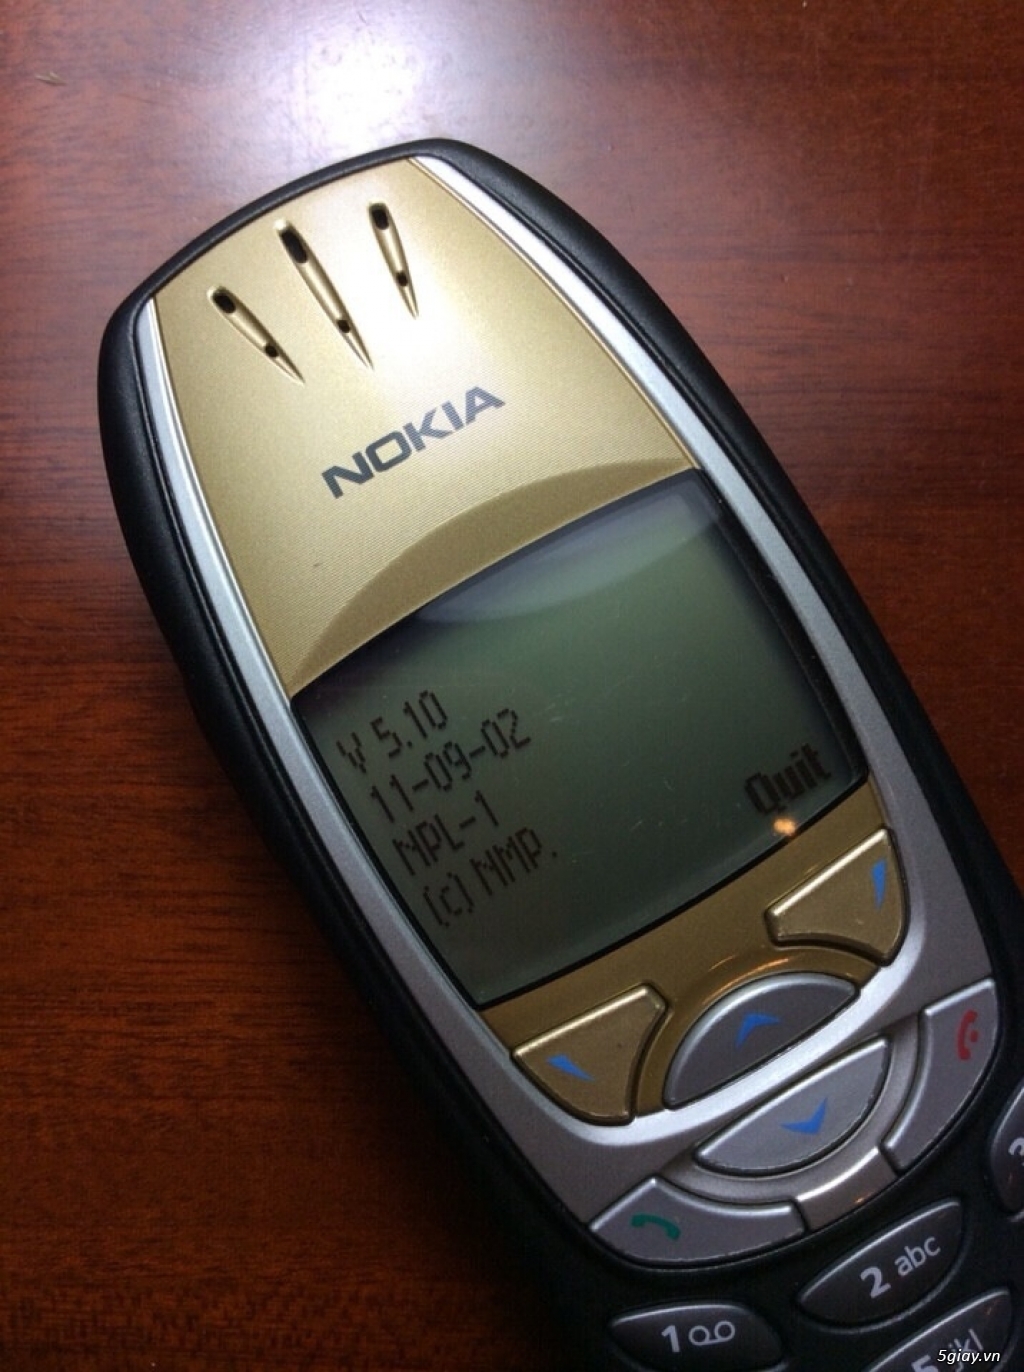 Nokia 6310i chuẩn xách tay eu, bản xuất pháp fabrique, đẹp xuất sắc ! - 3